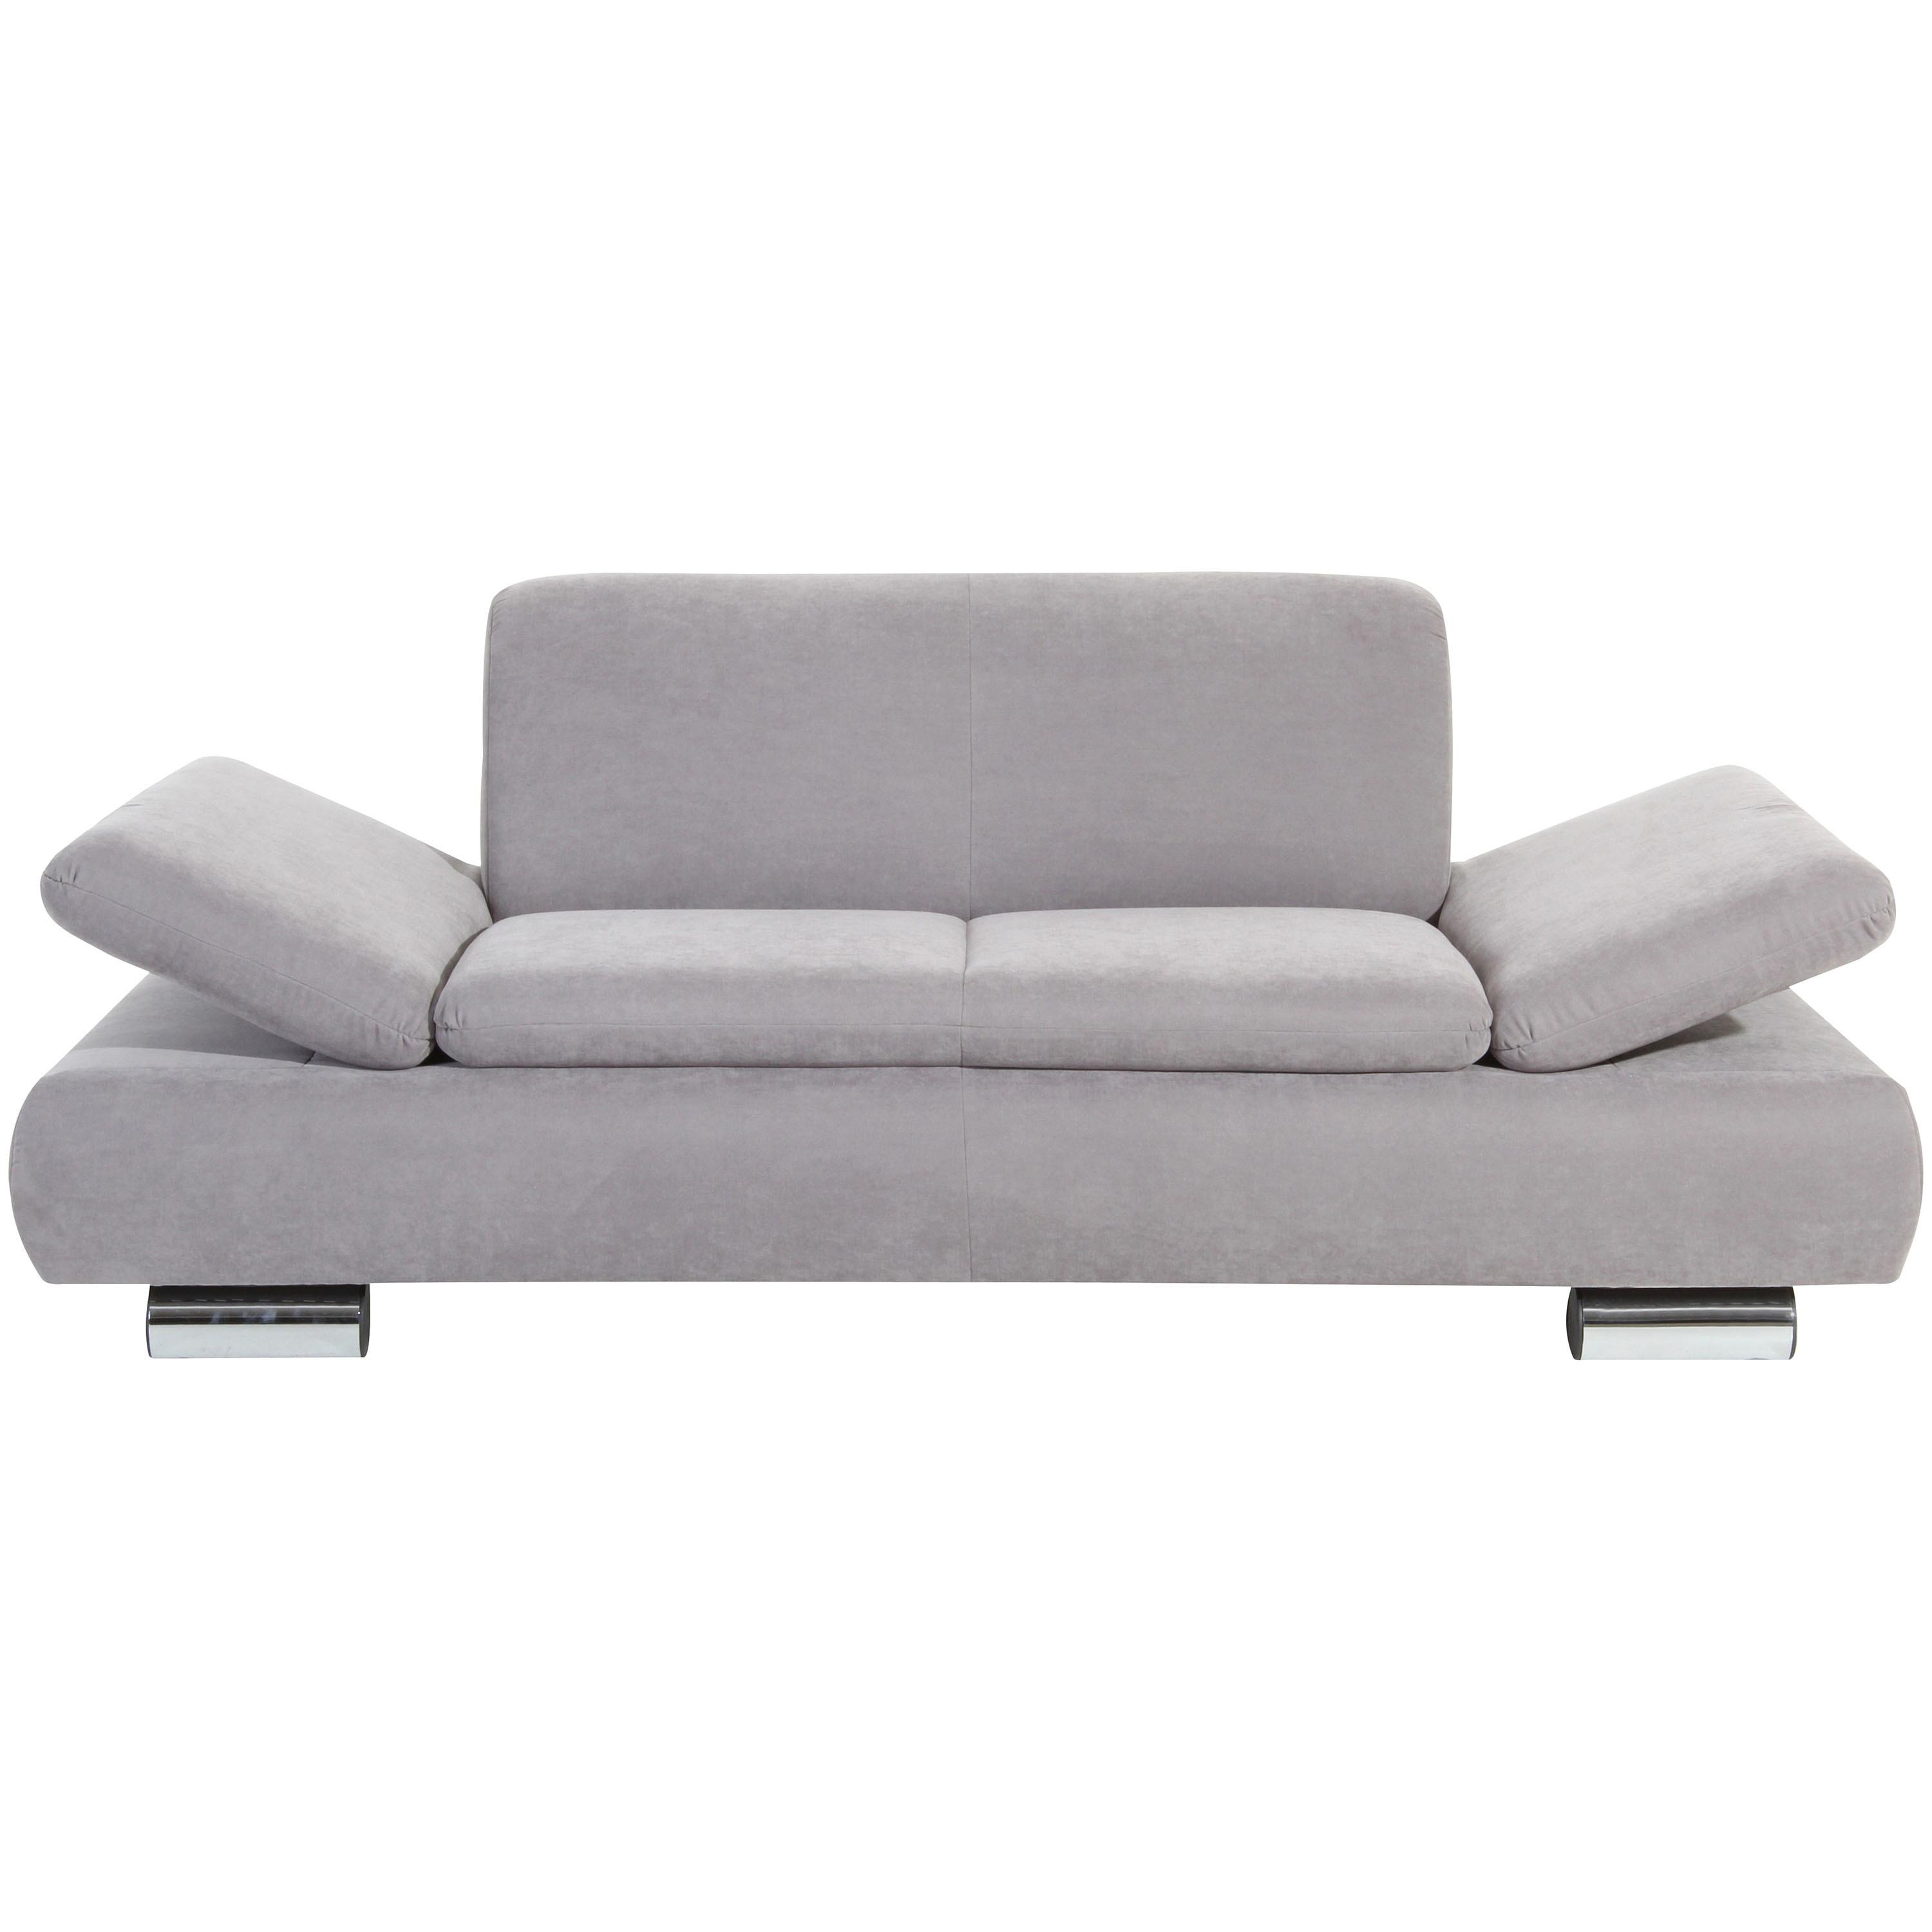 2-Sitzer-Sofa Terrence Armteil verstellbar, Silberfarben - Silberfarben, Design, Textil (190/76/90cm) - Max Winzer